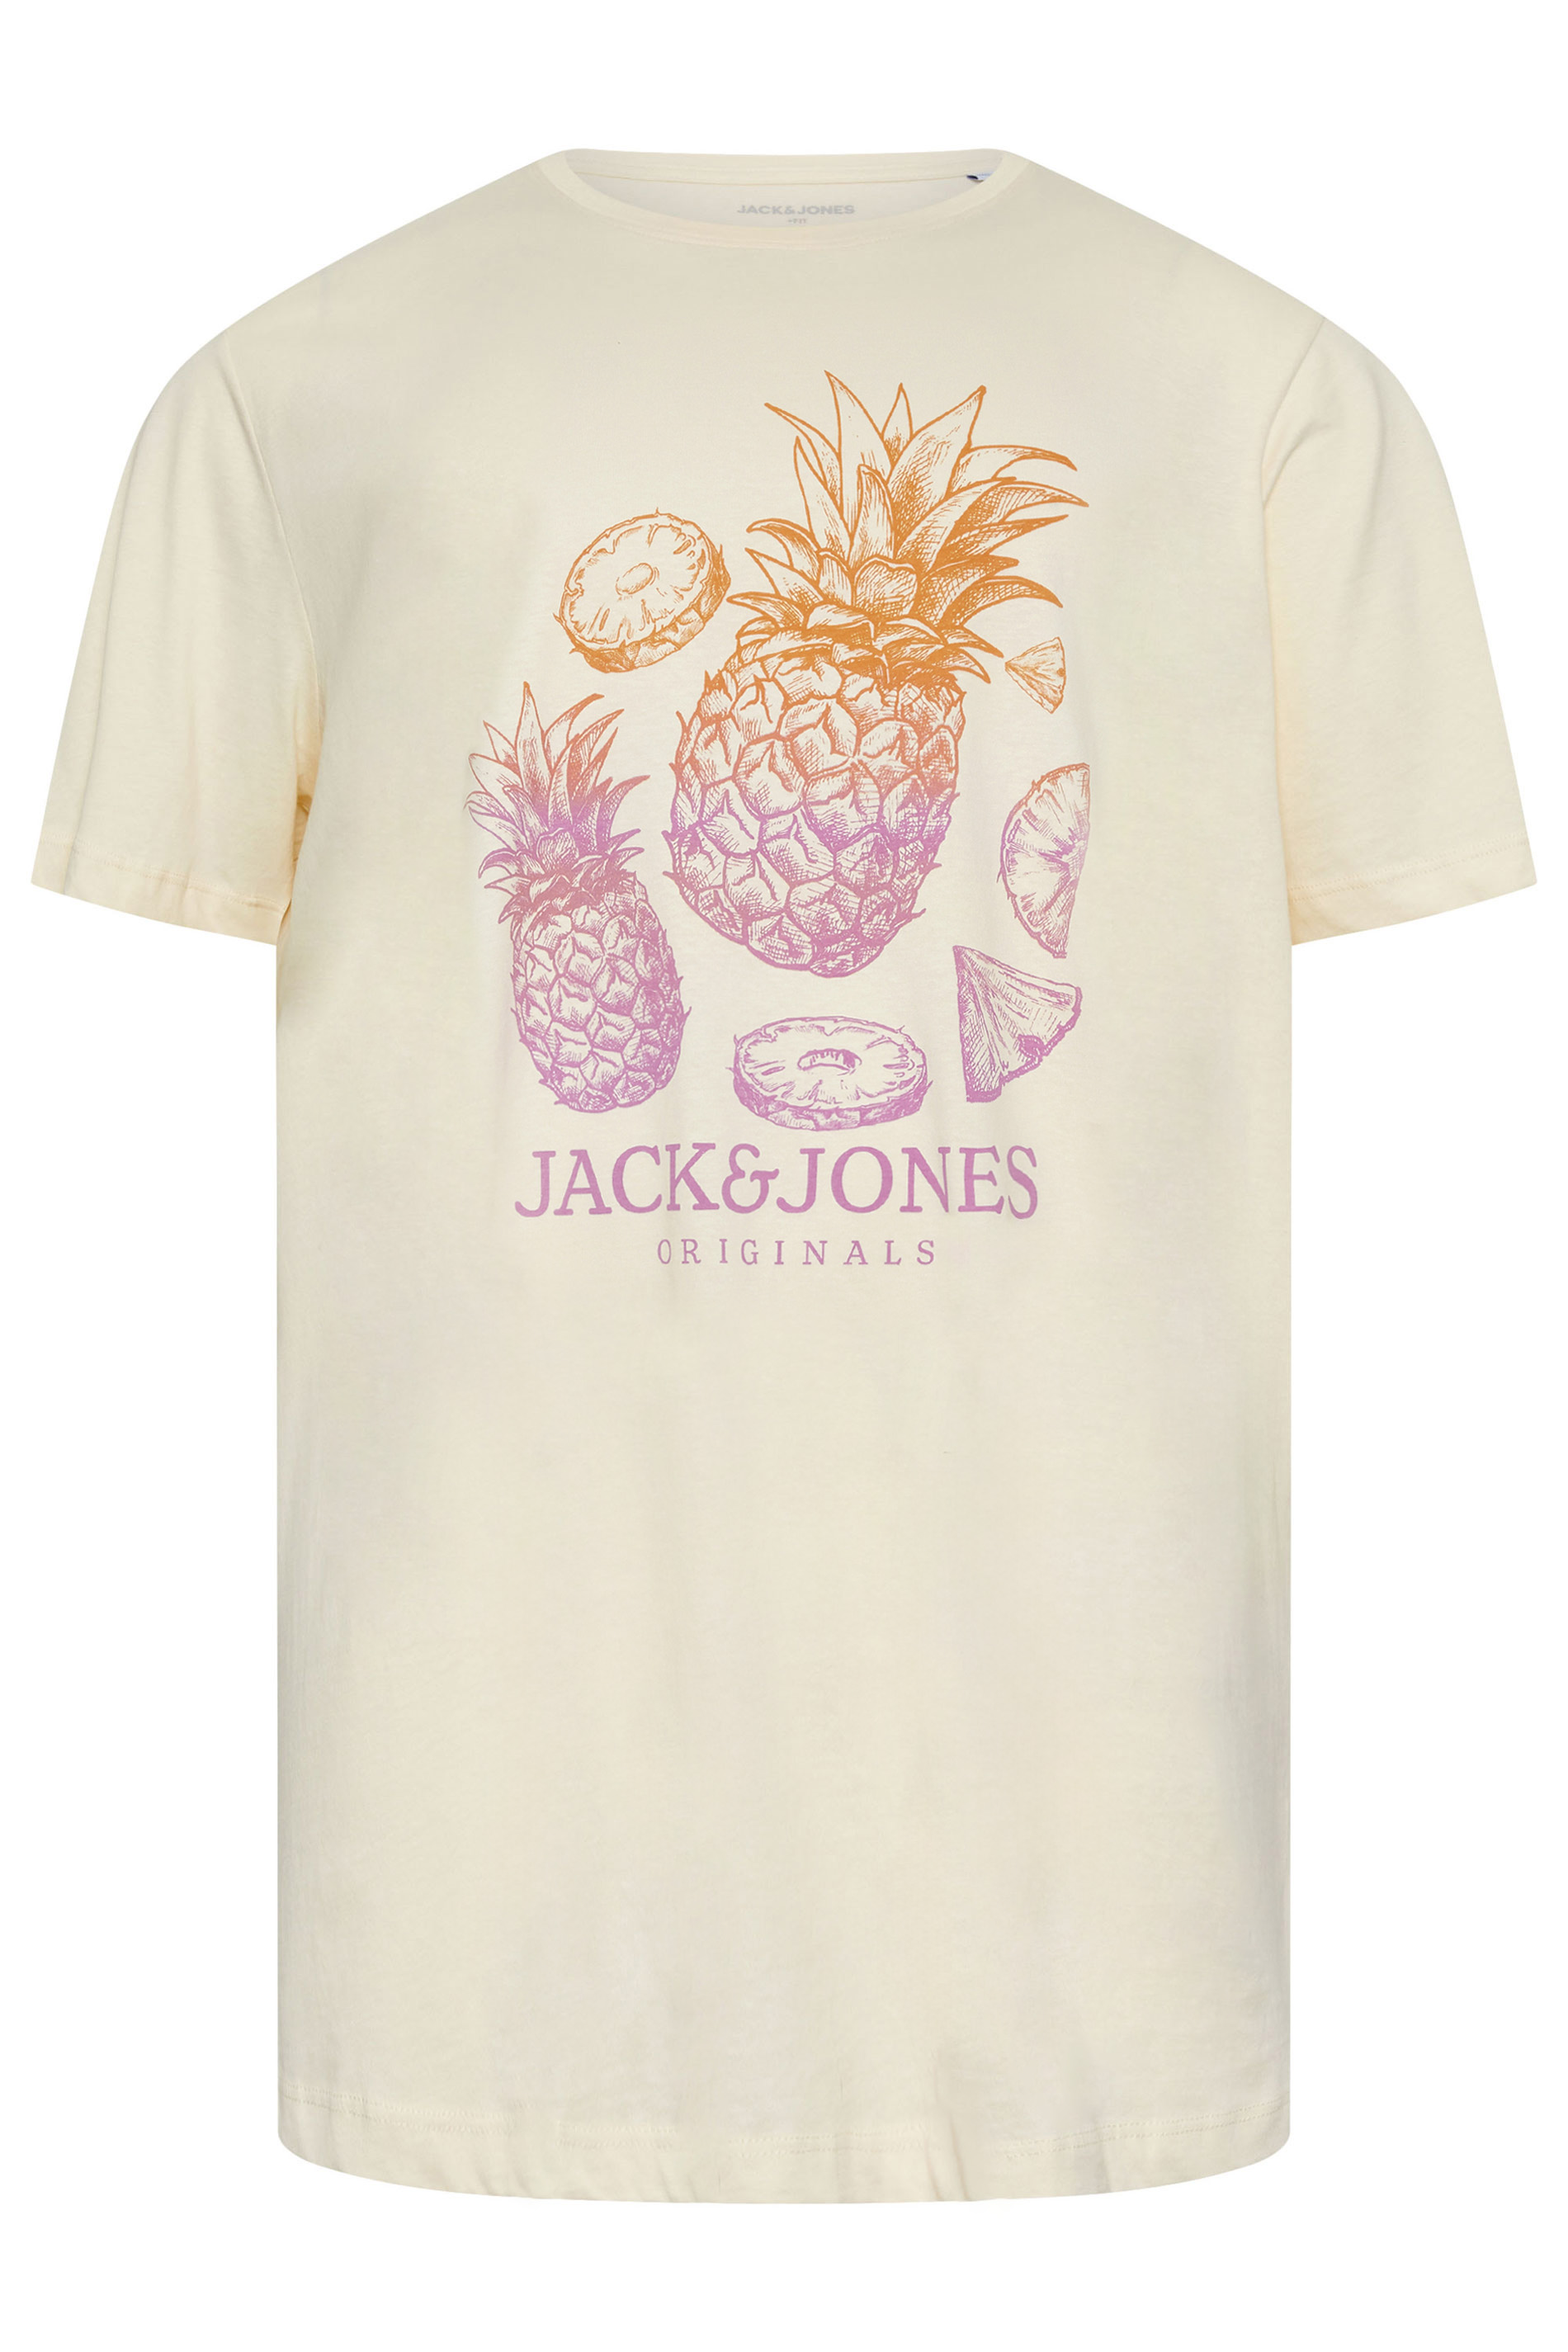 JACK & JONES Cream Short Sleeve Crew Neck T-Shirt | BadRhino 2